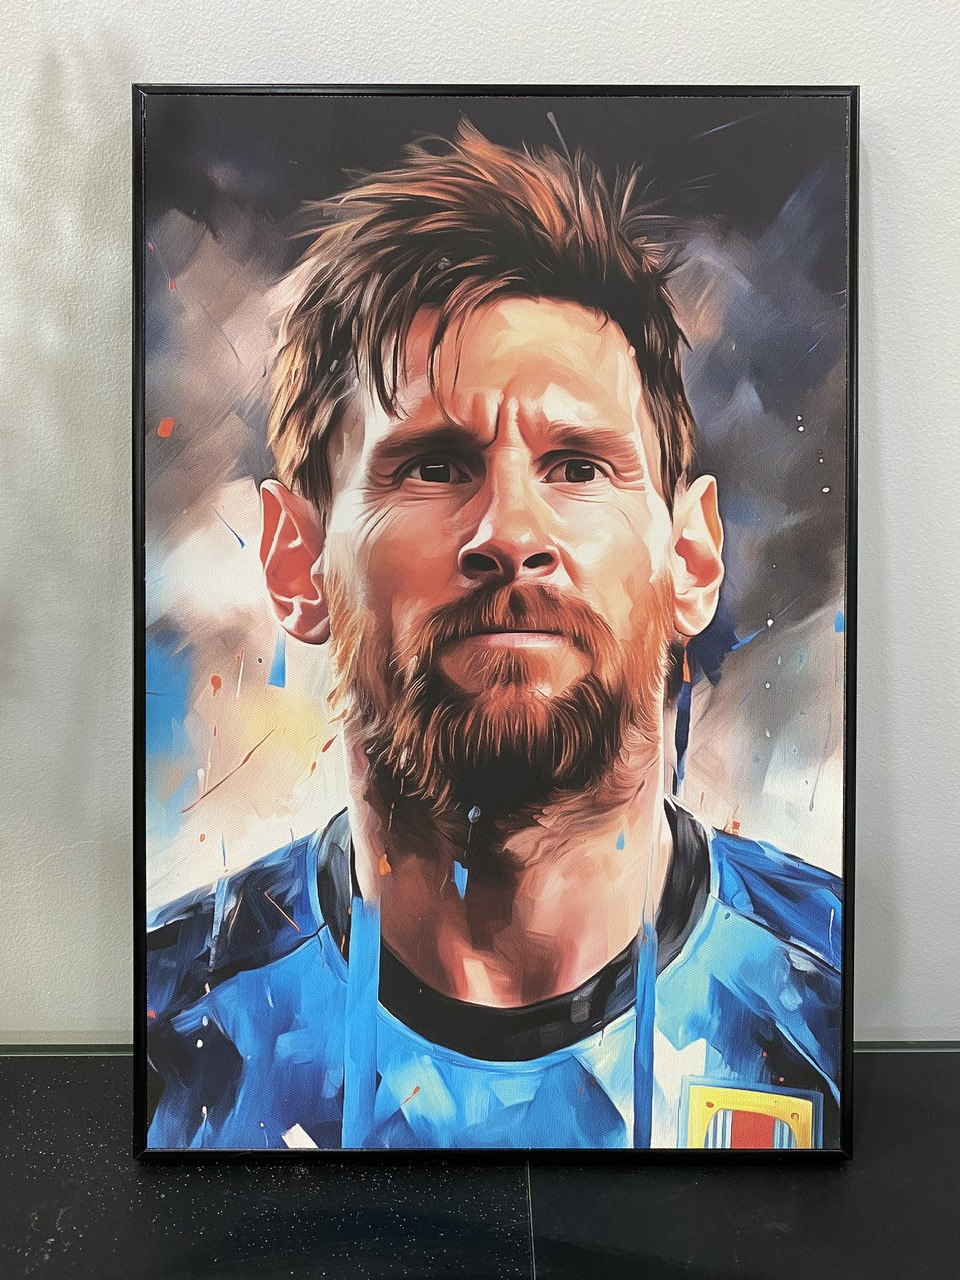 Quà tặng cho tâm | Tranh nghệ thuật chân dung cầu thủ Messi | Tranh canvas (STA_Messi_01)